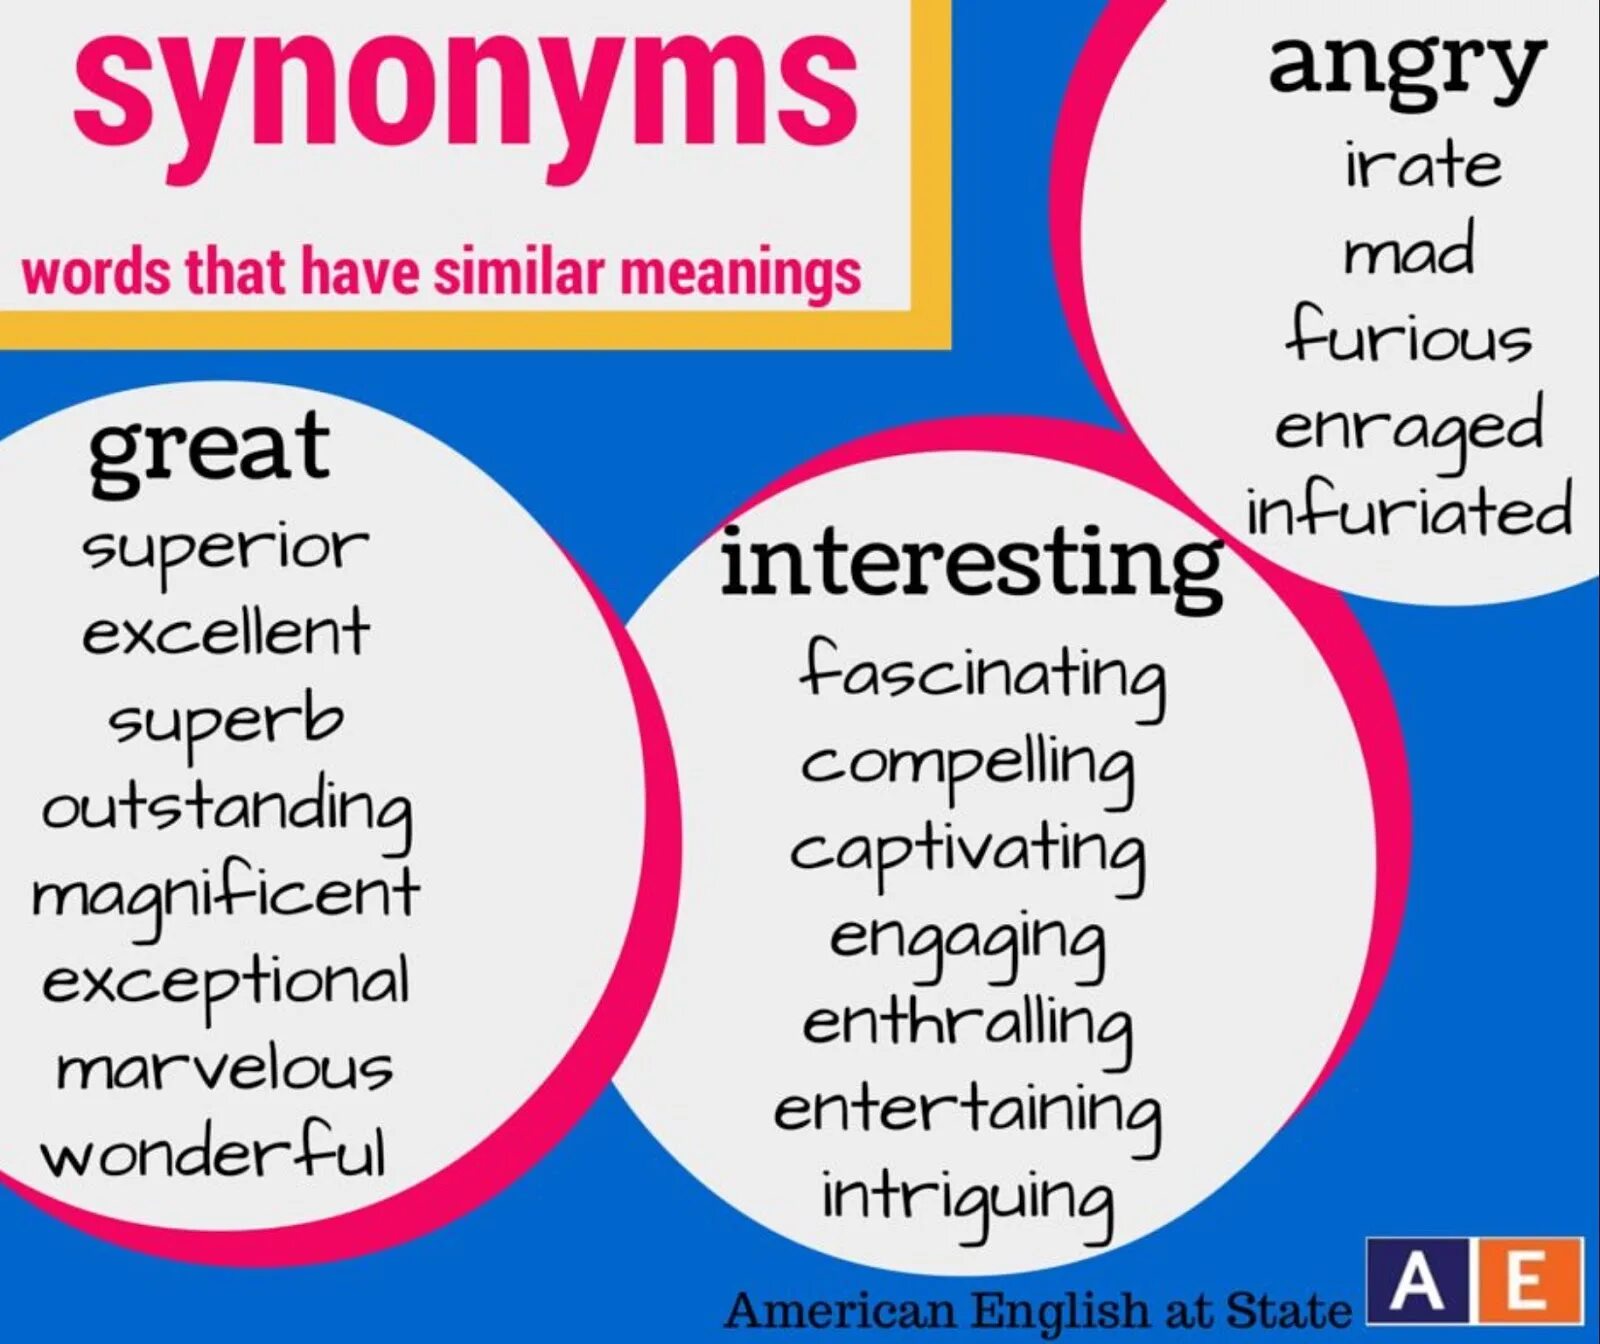 Interest synonyms. Interesting синонимы на английском. Синонимы к слову interesting на английском. Синонимы в английском языке. Интересный синонимы на английском.